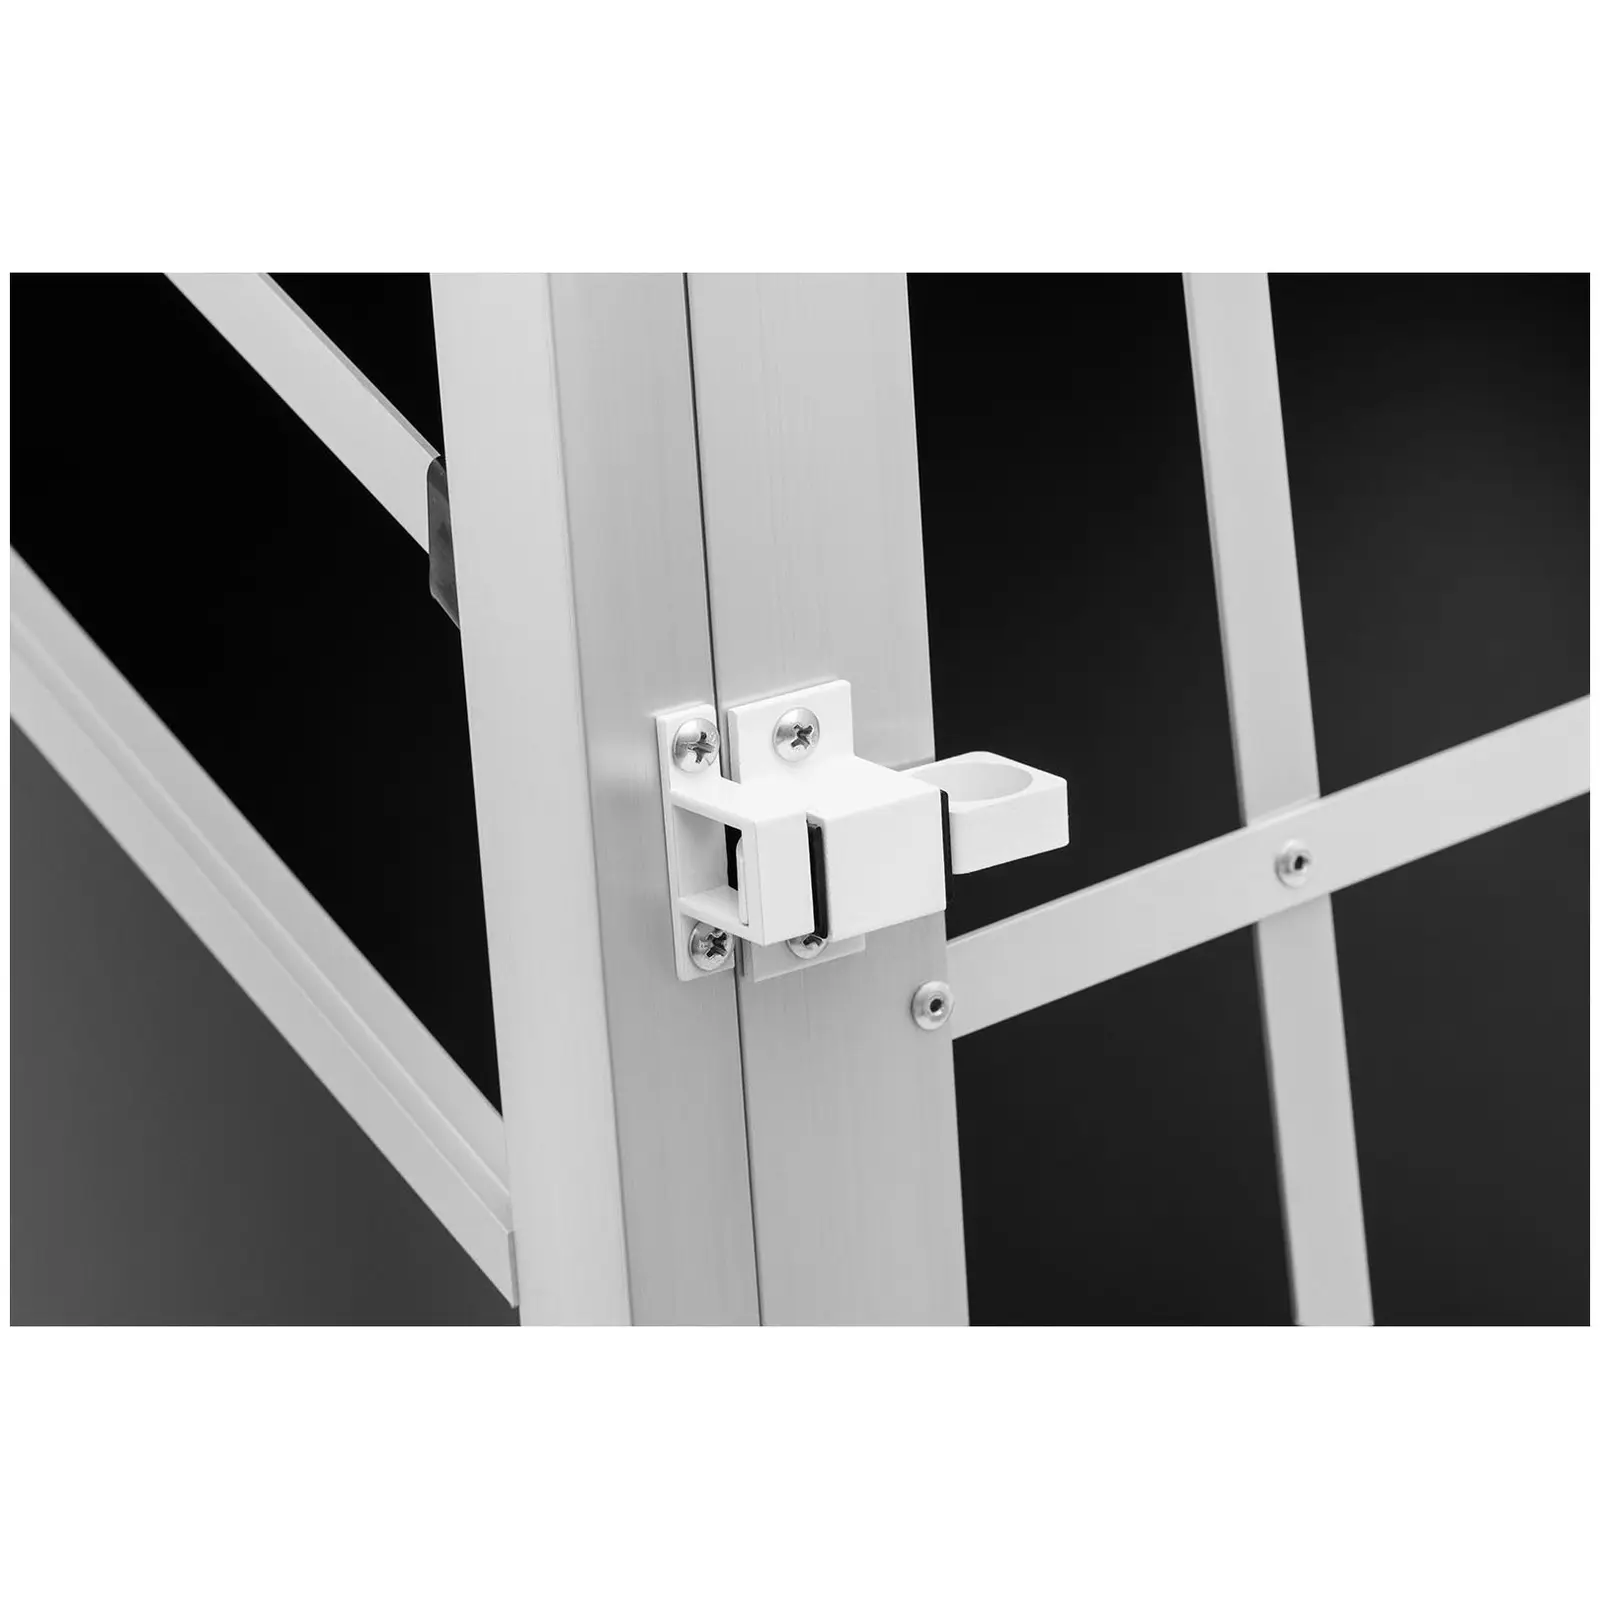 Hundebur - aluminium - trapesformet - 85 x 95 x 69 cm